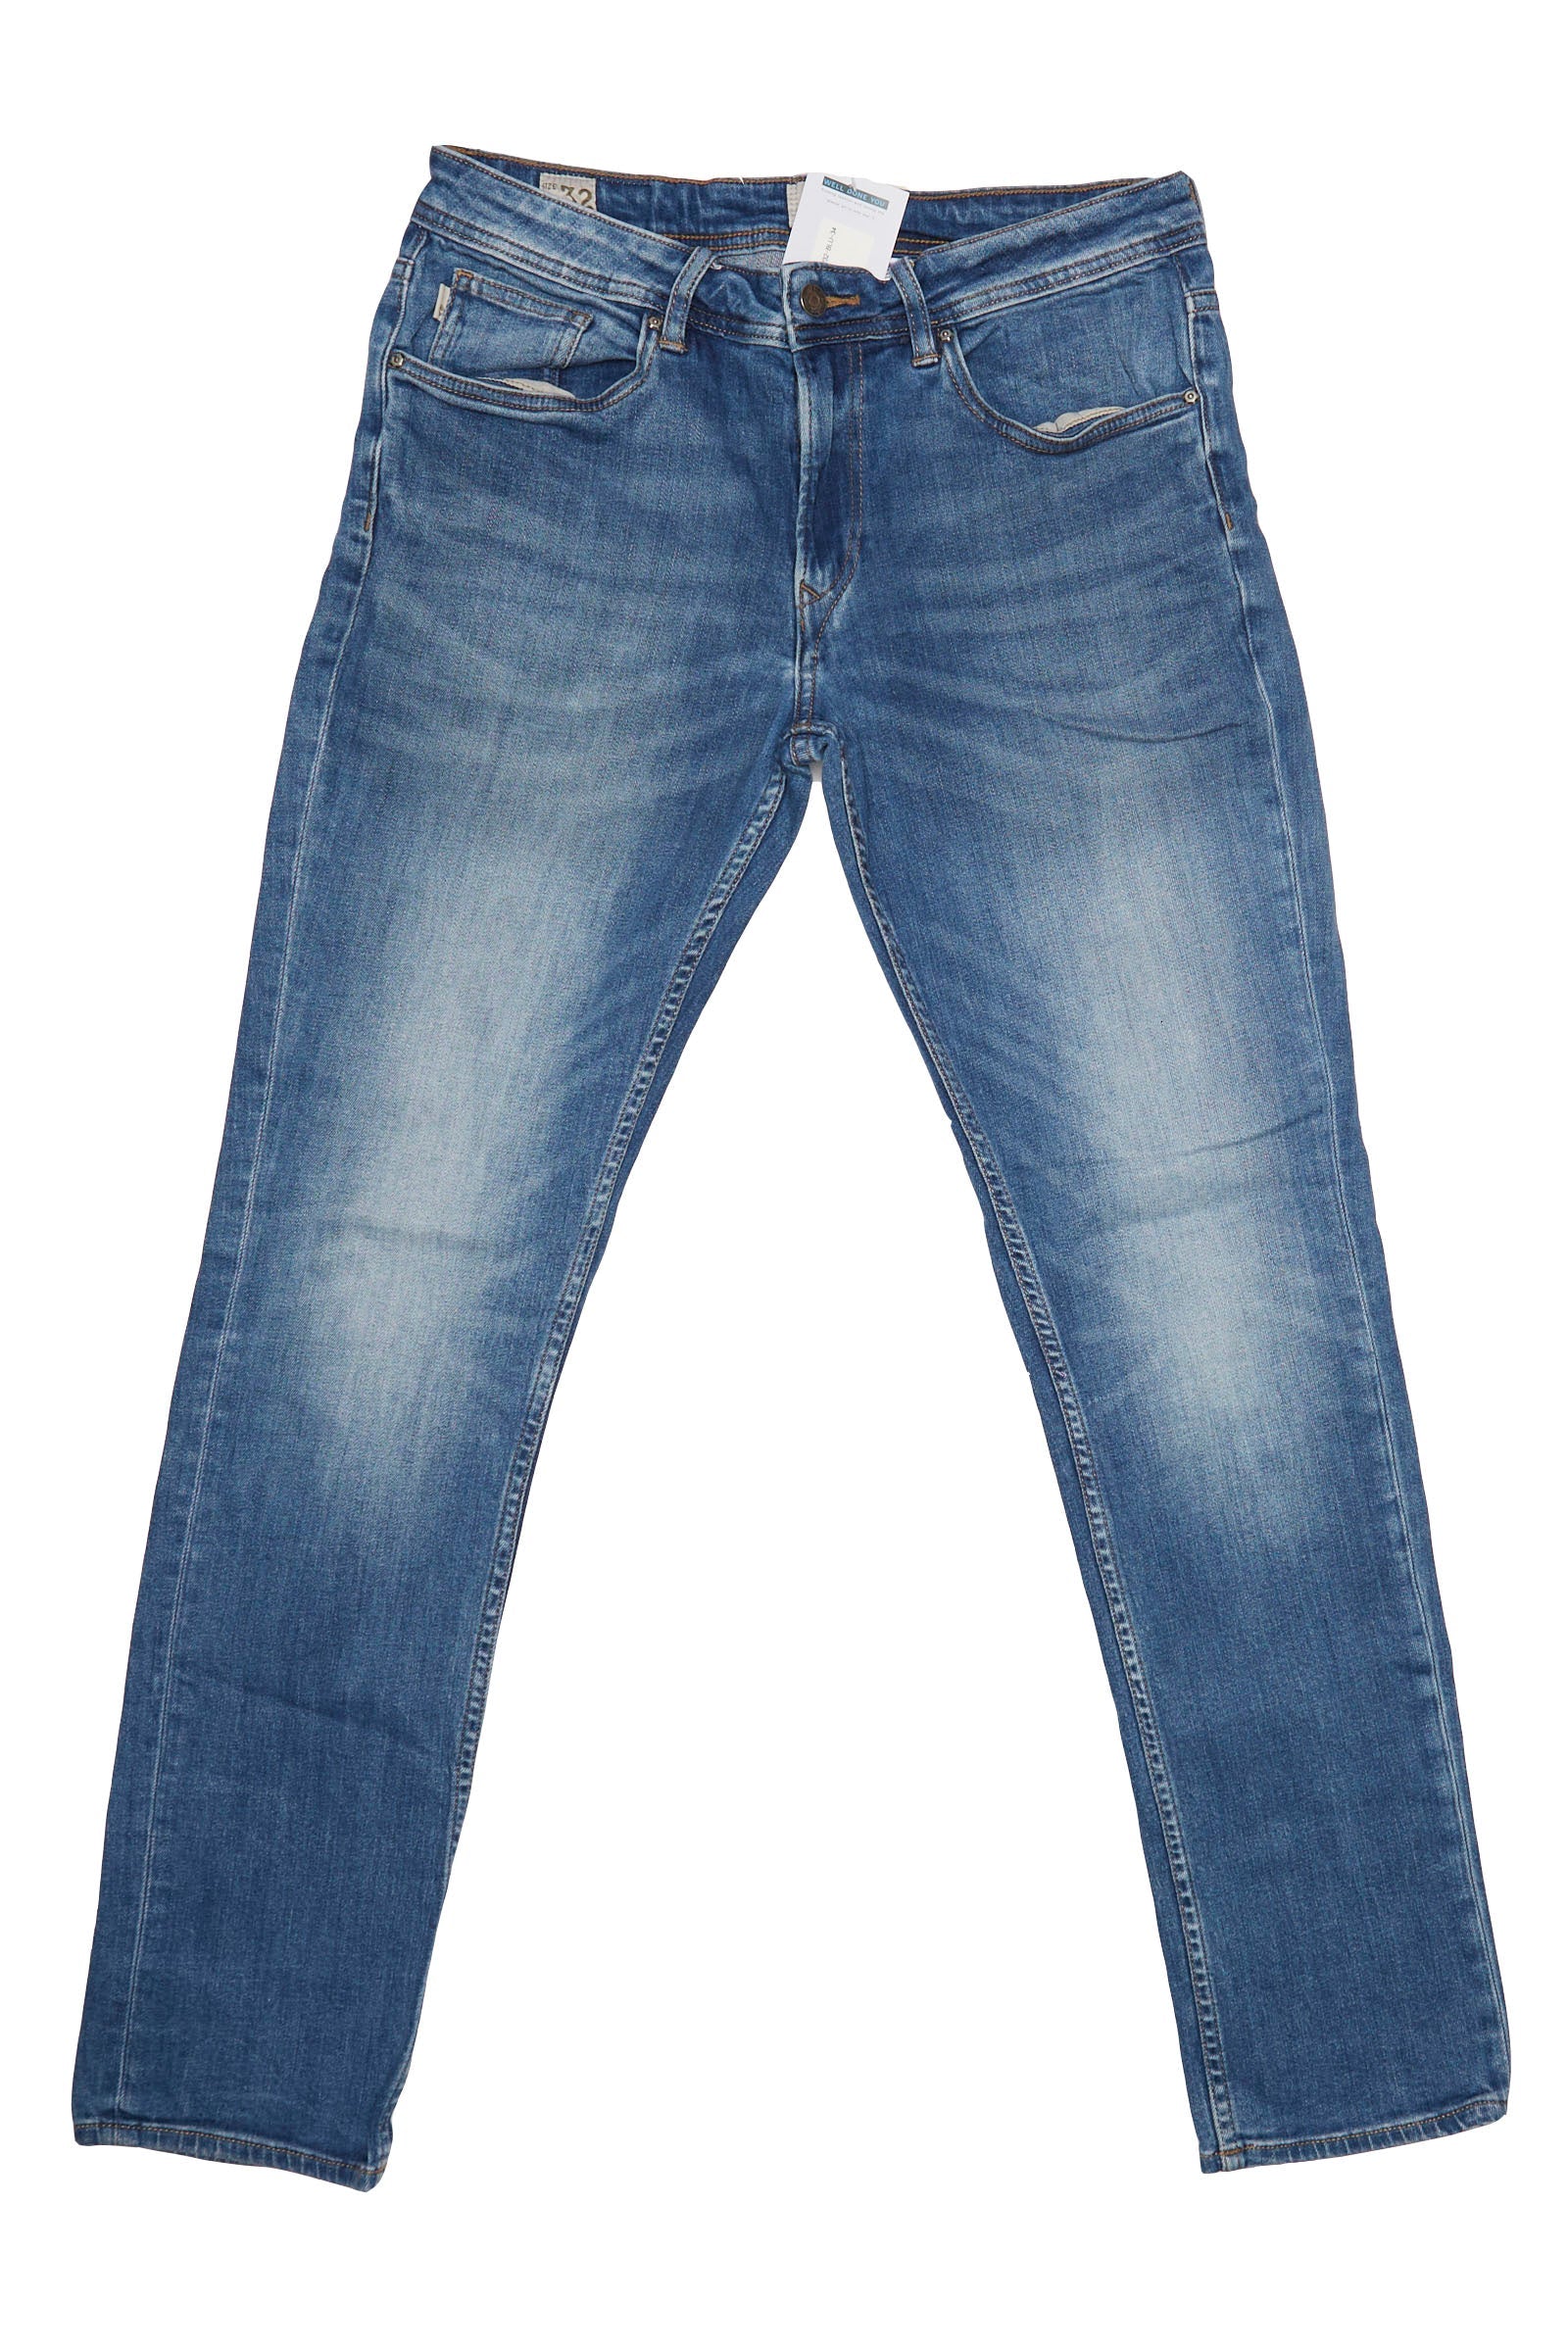 Mens Timberland Slim Fit Denim Jeans - W32" L33"